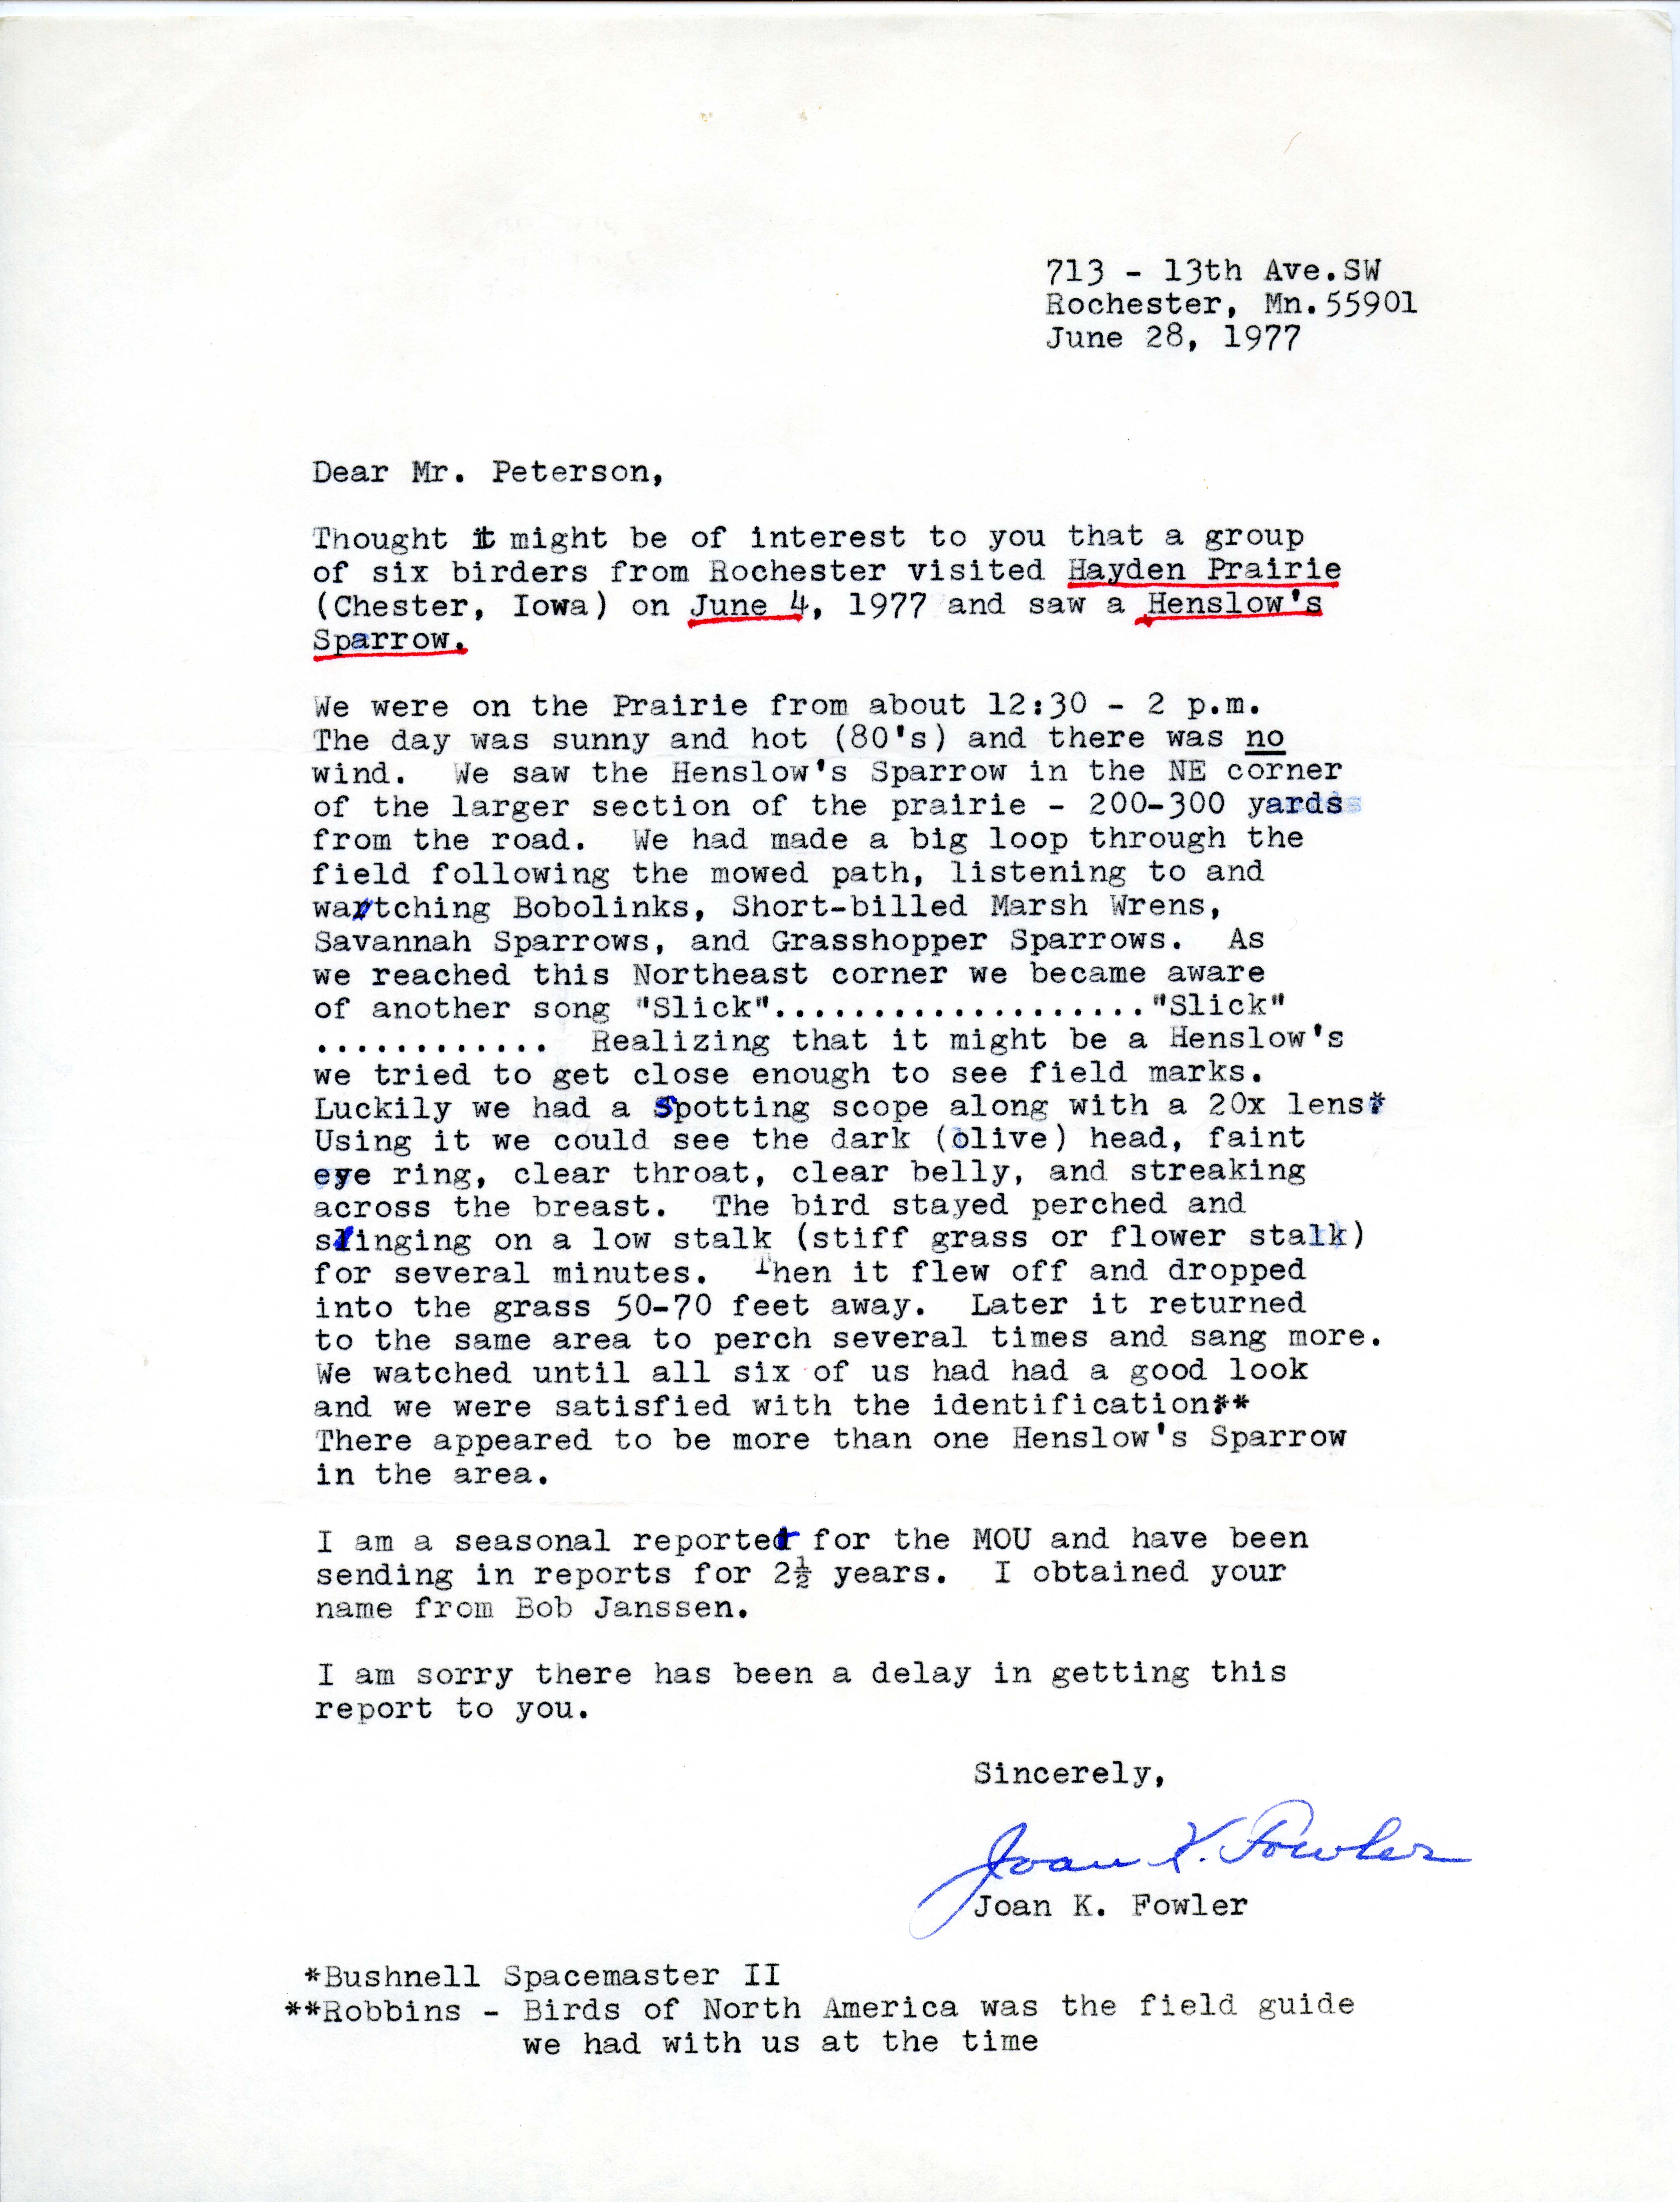 Joan K. Fowler letter to Peter C. Petersen regarding bird sightings, June 28, 1977